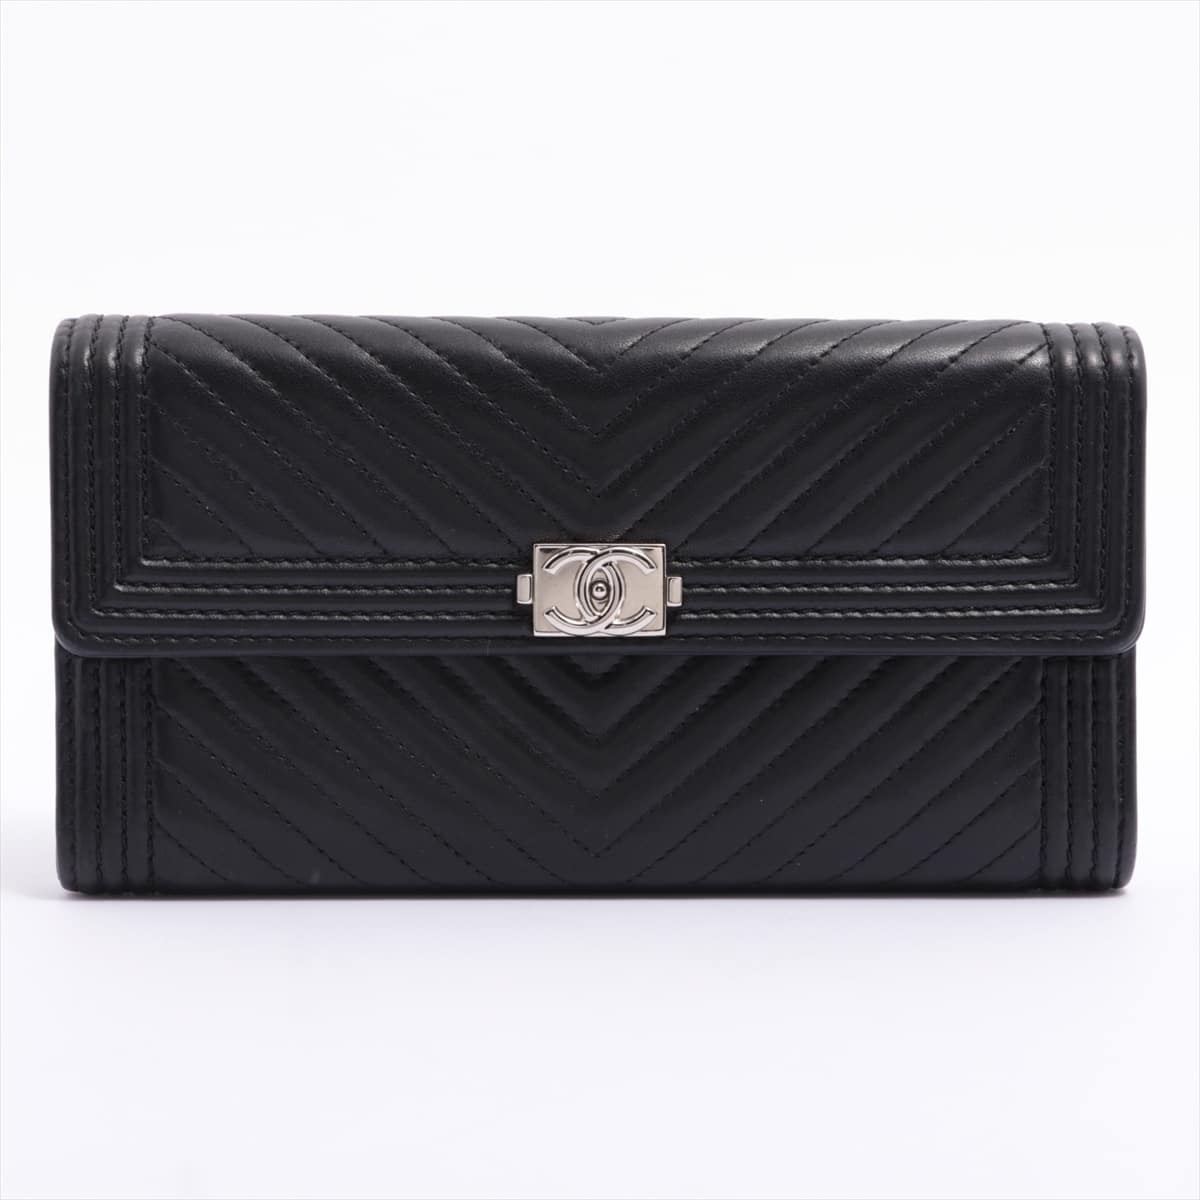 Chanel Boy Chanel Lambskin Wallet Black Silver Metal fittings 22XXXXXX